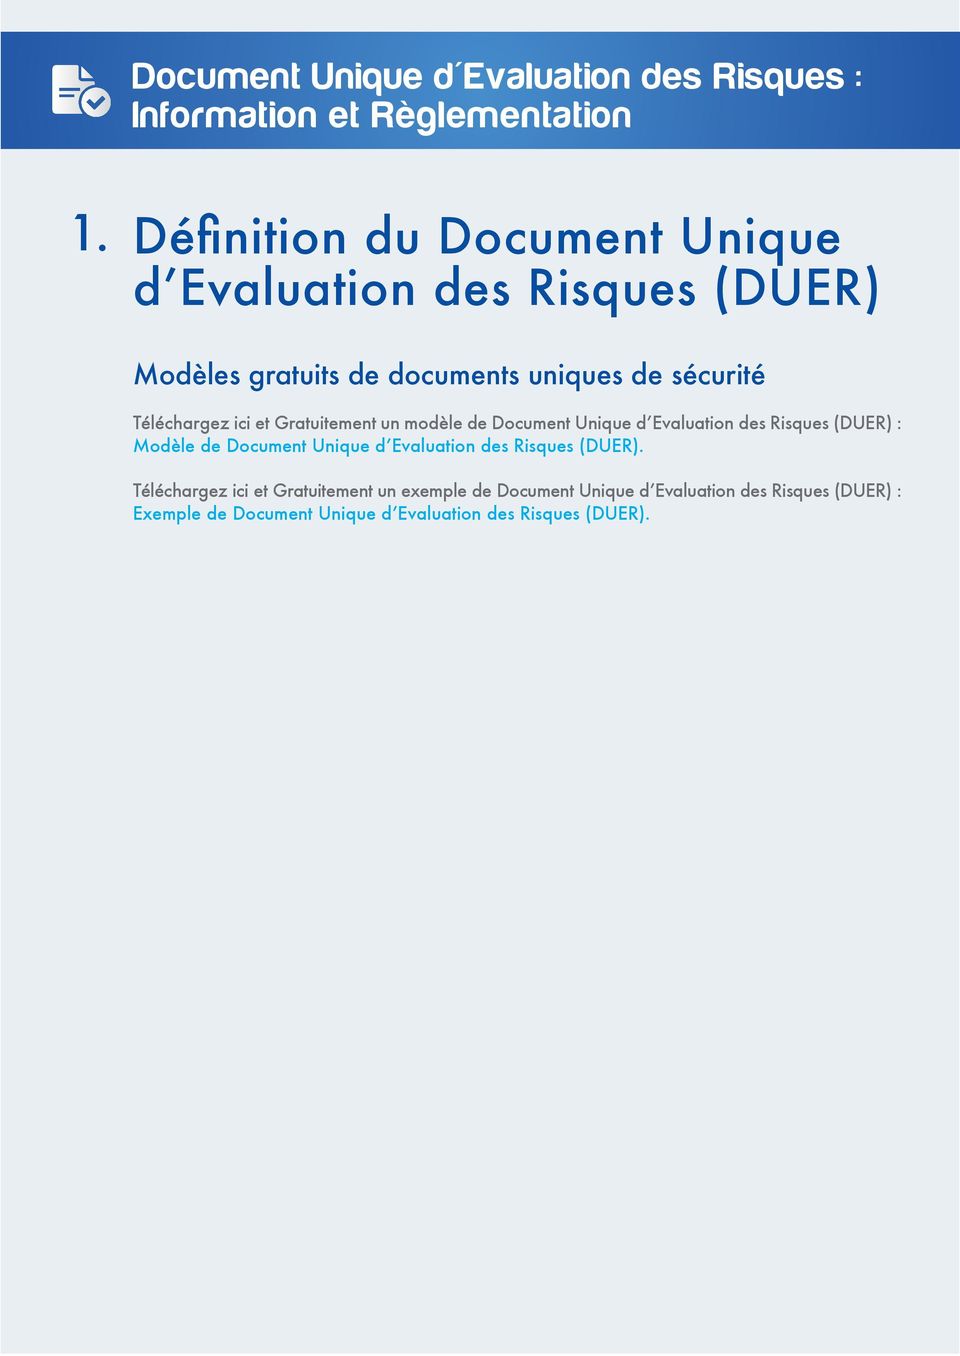 Modèle de Document Unique d Evaluation des Risques (DUER).